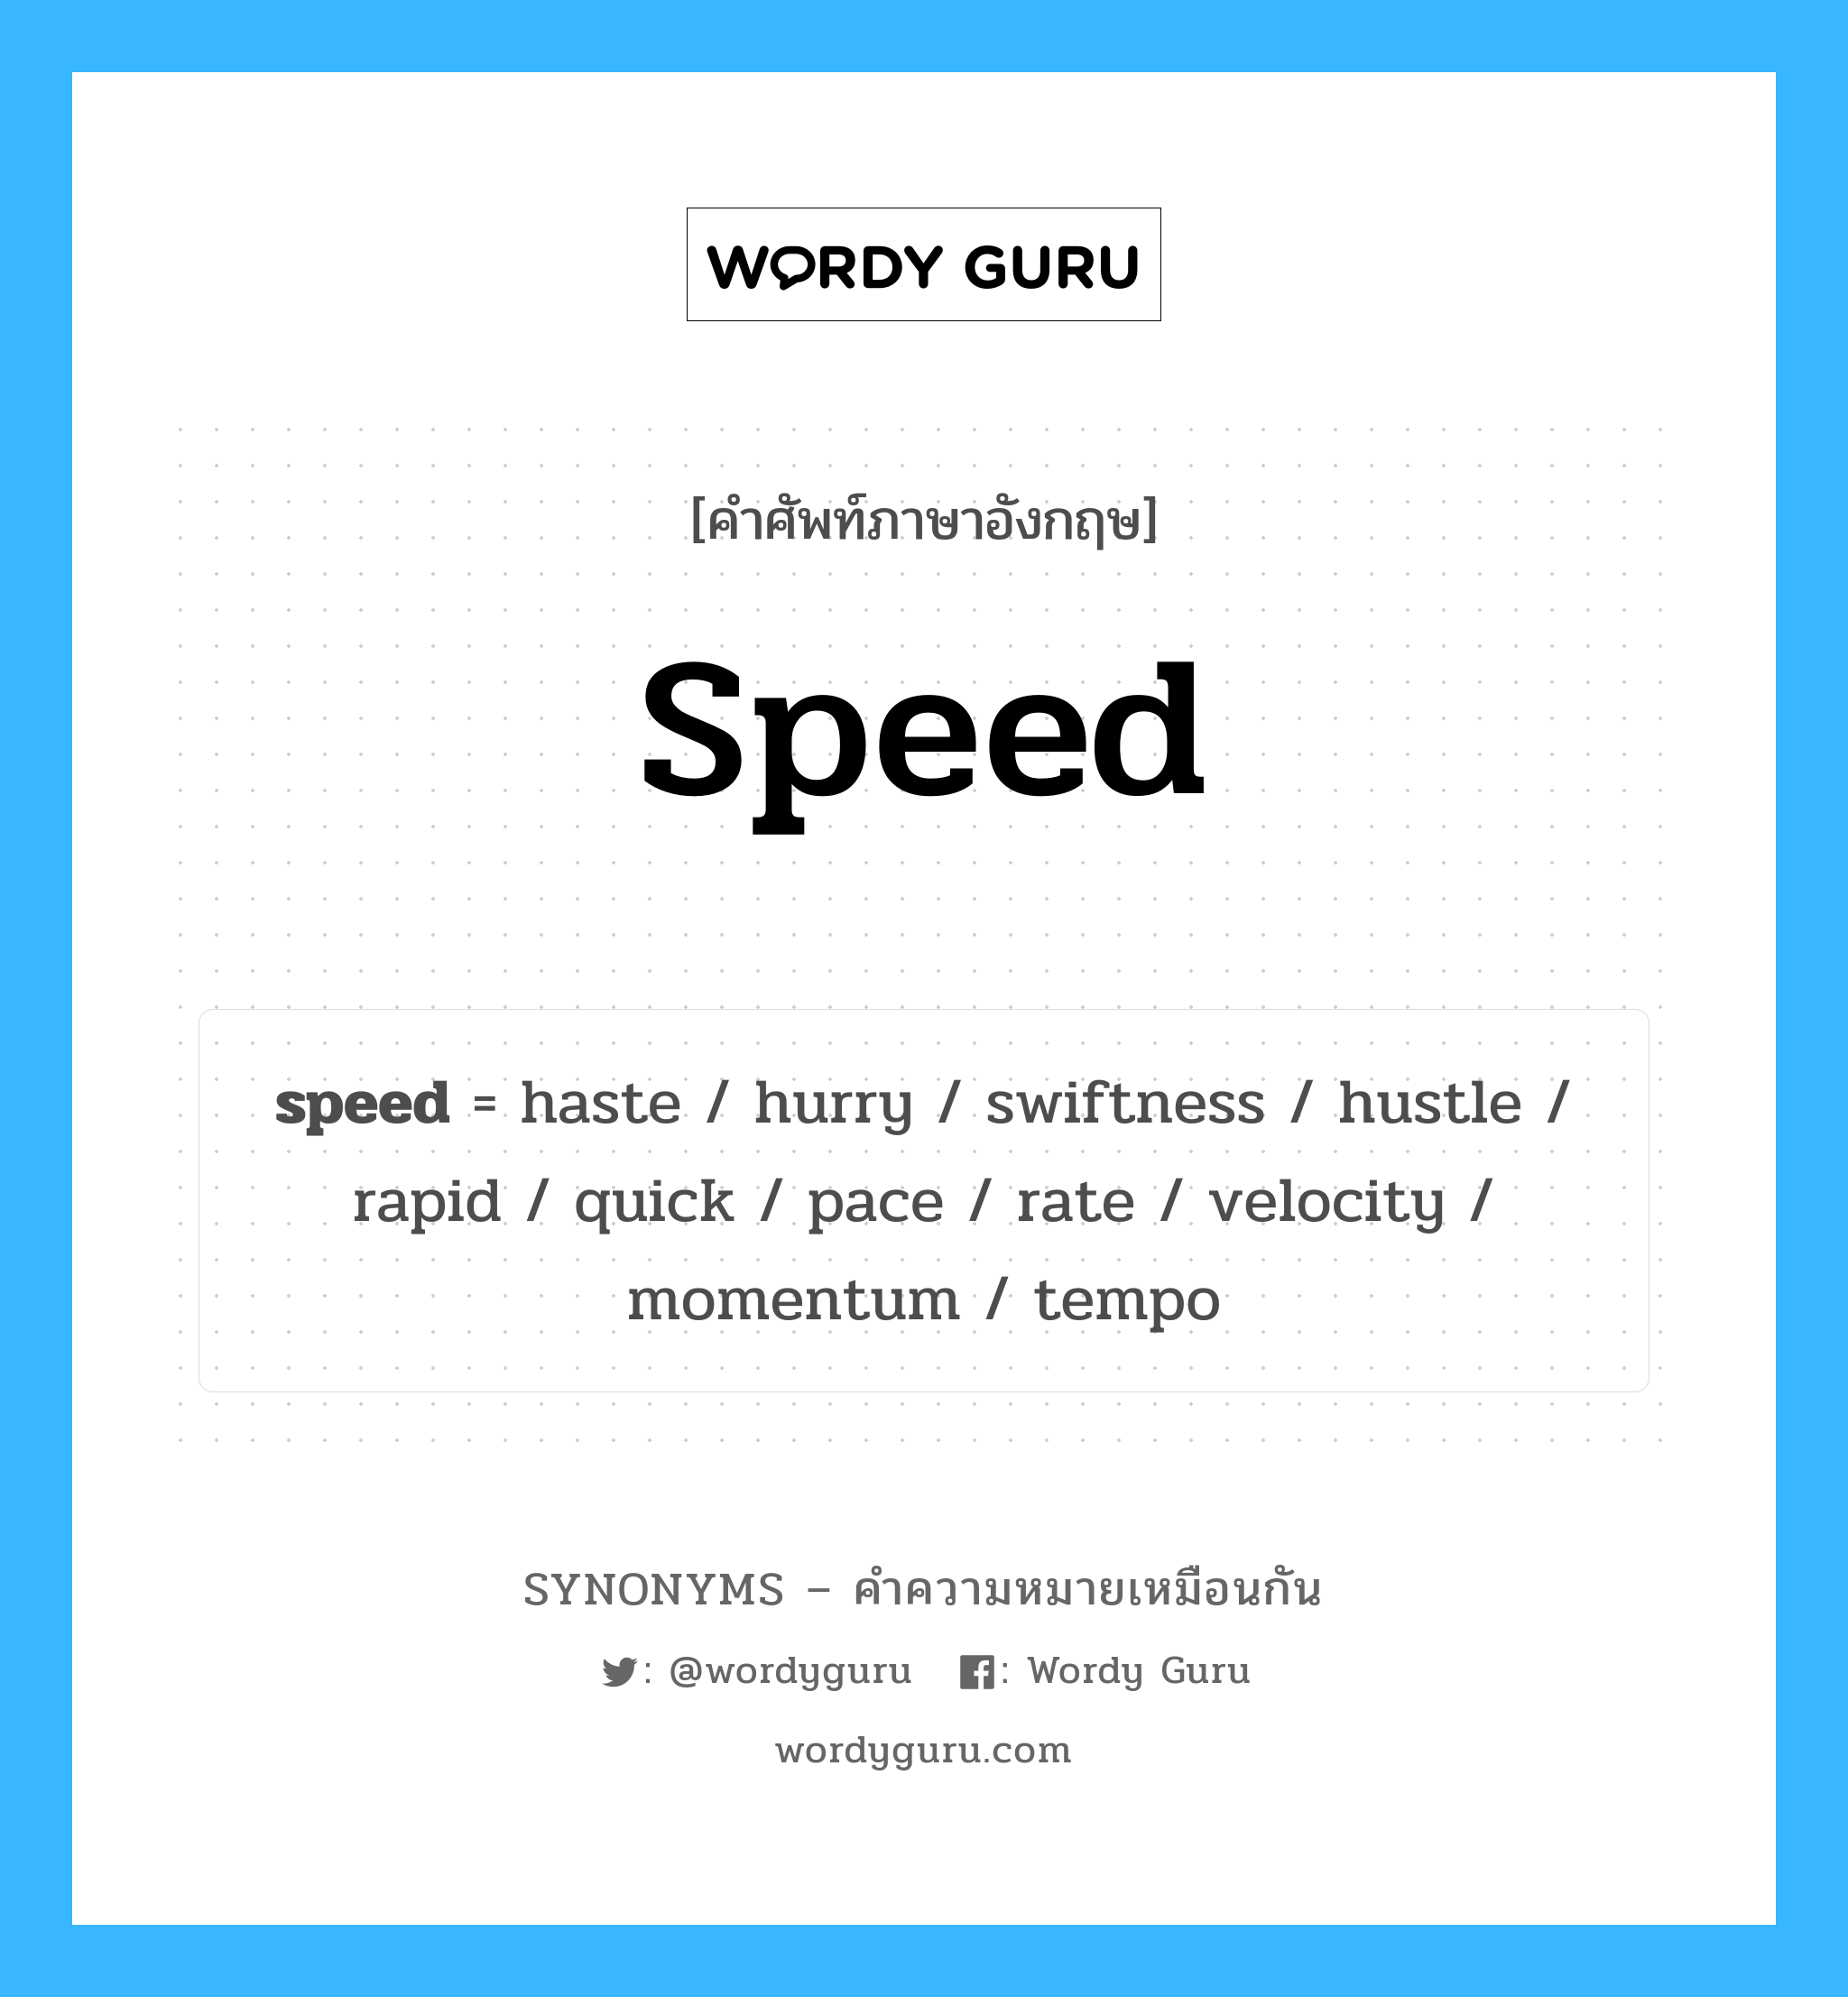 haste เป็นหนึ่งใน speed และมีคำอื่น ๆ อีกดังนี้, คำศัพท์ภาษาอังกฤษ haste ความหมายคล้ายกันกับ speed แปลว่า รีบเร่ง หมวด speed